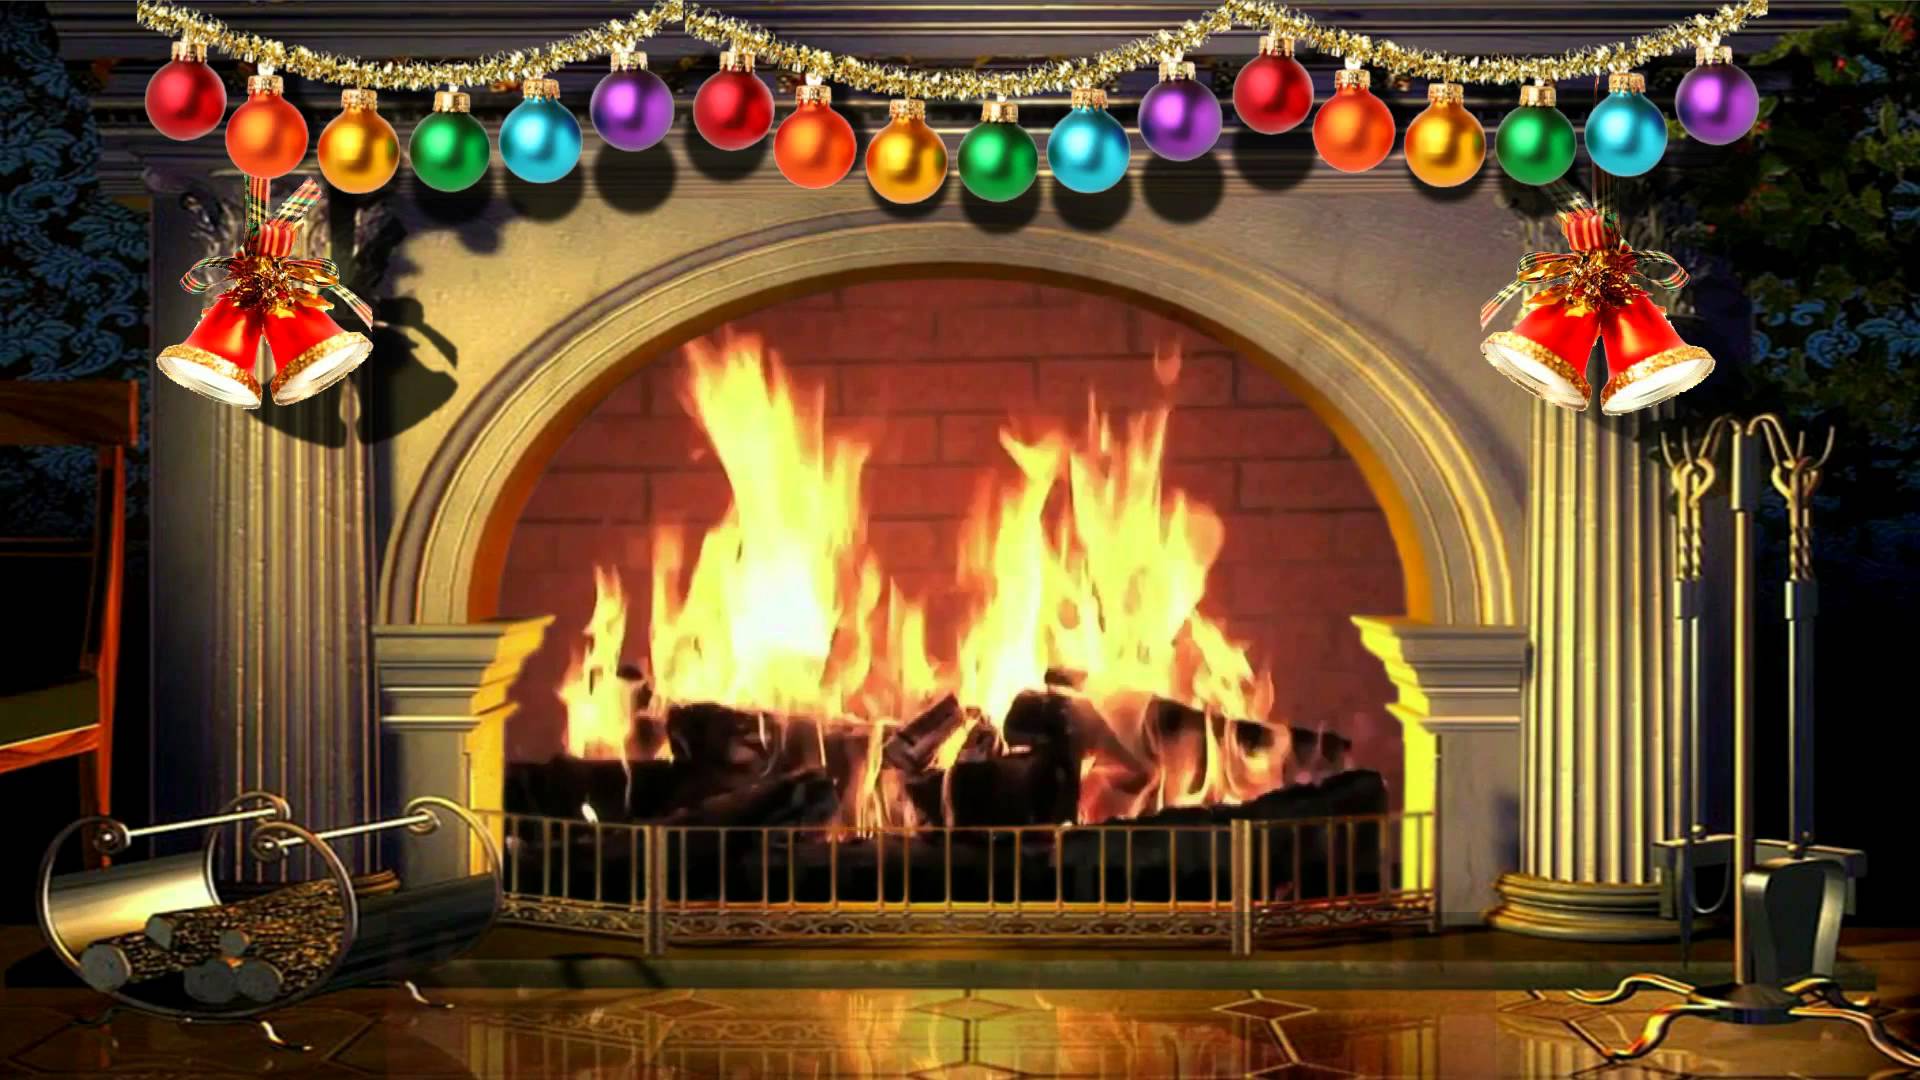 Free download Virtual Christmas Fireplace Free background video - Bạn đang tìm kiếm một lò sưởi ảo thật đẹp mắt cho phòng khách của mình vào mùa đông? Tạm biệt với những lò sưởi cồng kềnh, thay vào đó hãy thử tải xuống video phông nền lò sưởi ảo Giáng Sinh của chúng tôi. Với hình ảnh lửa cháy ấm áp, âm thanh hấp dẫn và không khí thật ấm cúng, bạn sẽ cảm thấy như đang ngồi trước một lò sưởi thực sự.